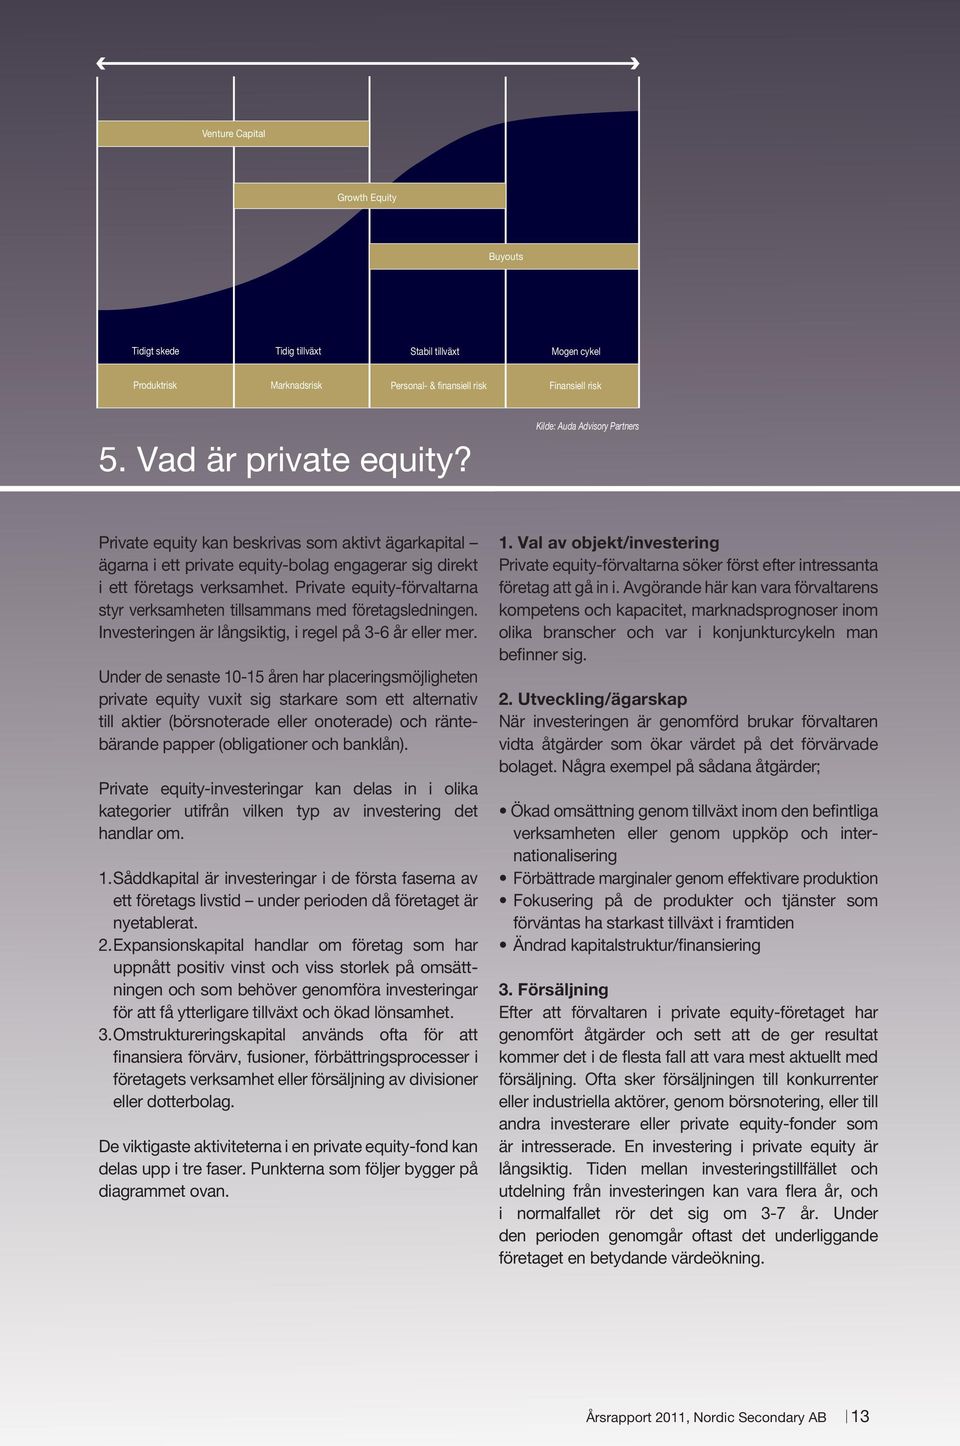 Private equity-förvaltarna styr verksamheten tillsammans med företagsledningen. Investeringen är långsiktig, i regel på 3-6 år eller mer.